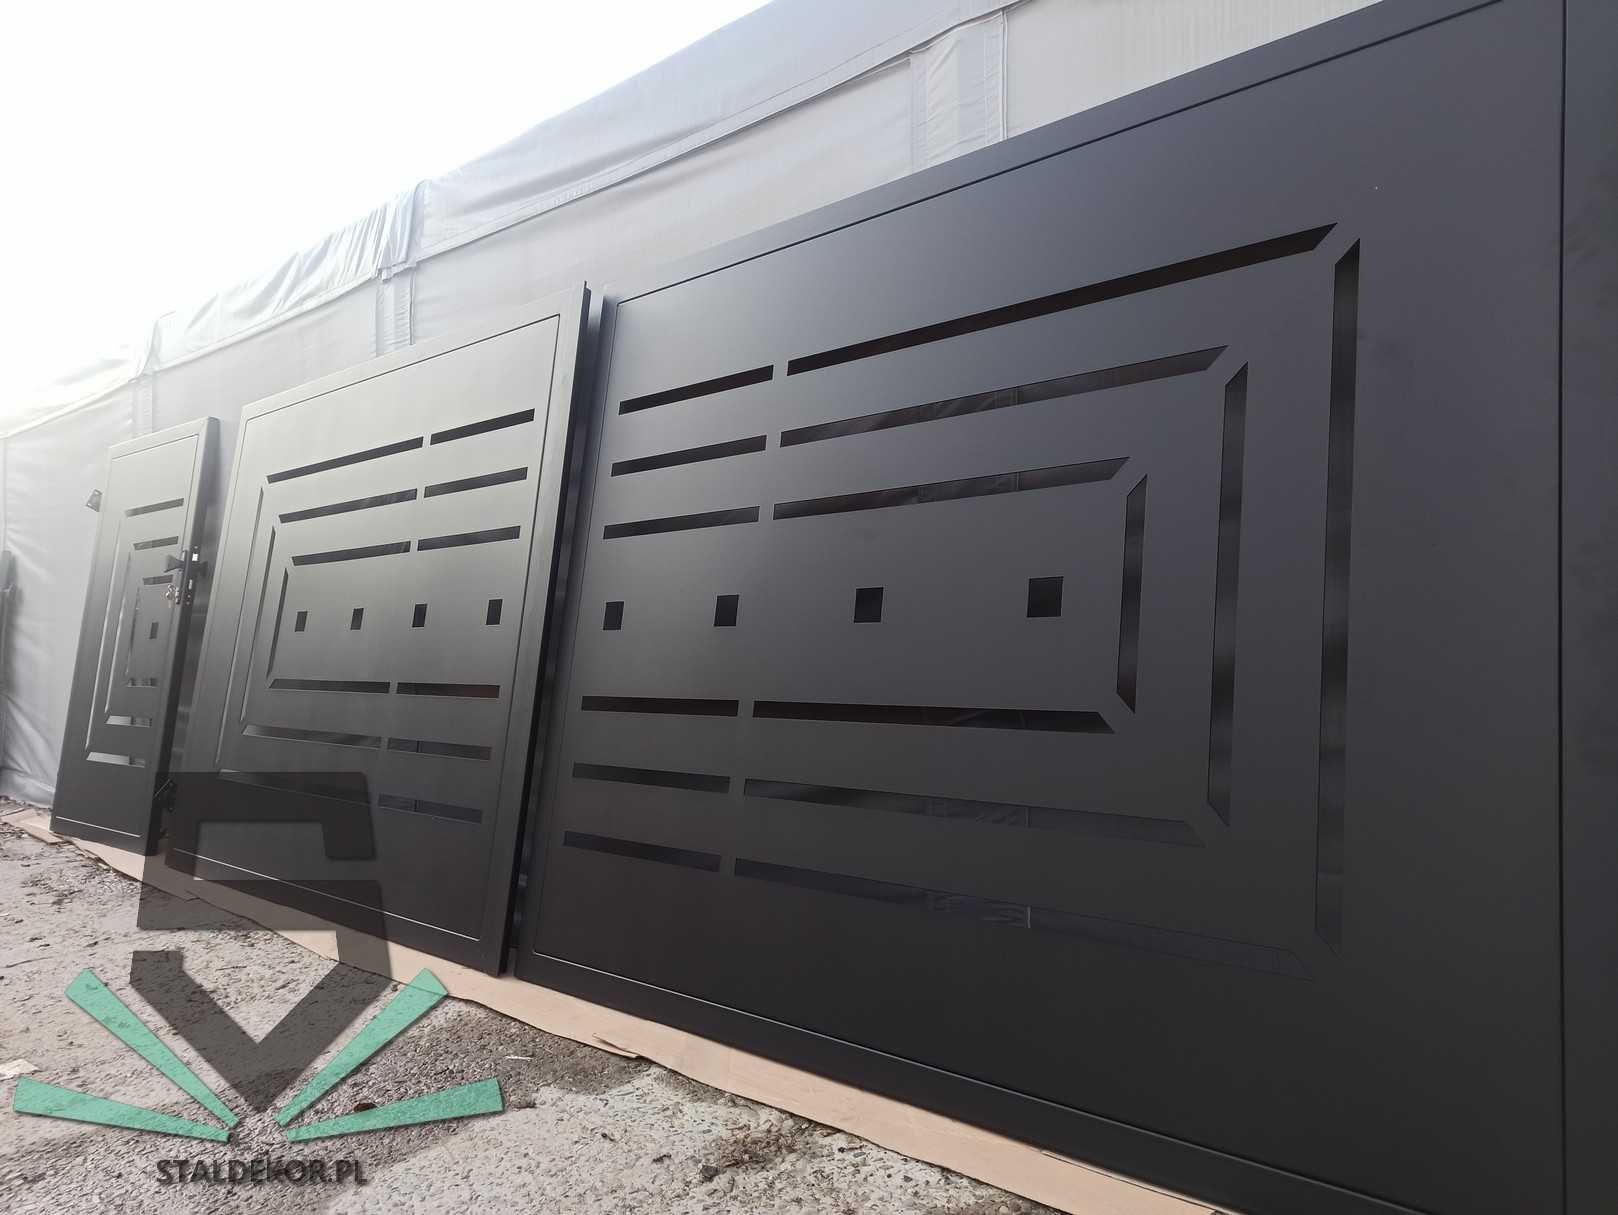 Brama dwuskrzydłowa 5x1,5m wycinana laserowo CNC panelowa.